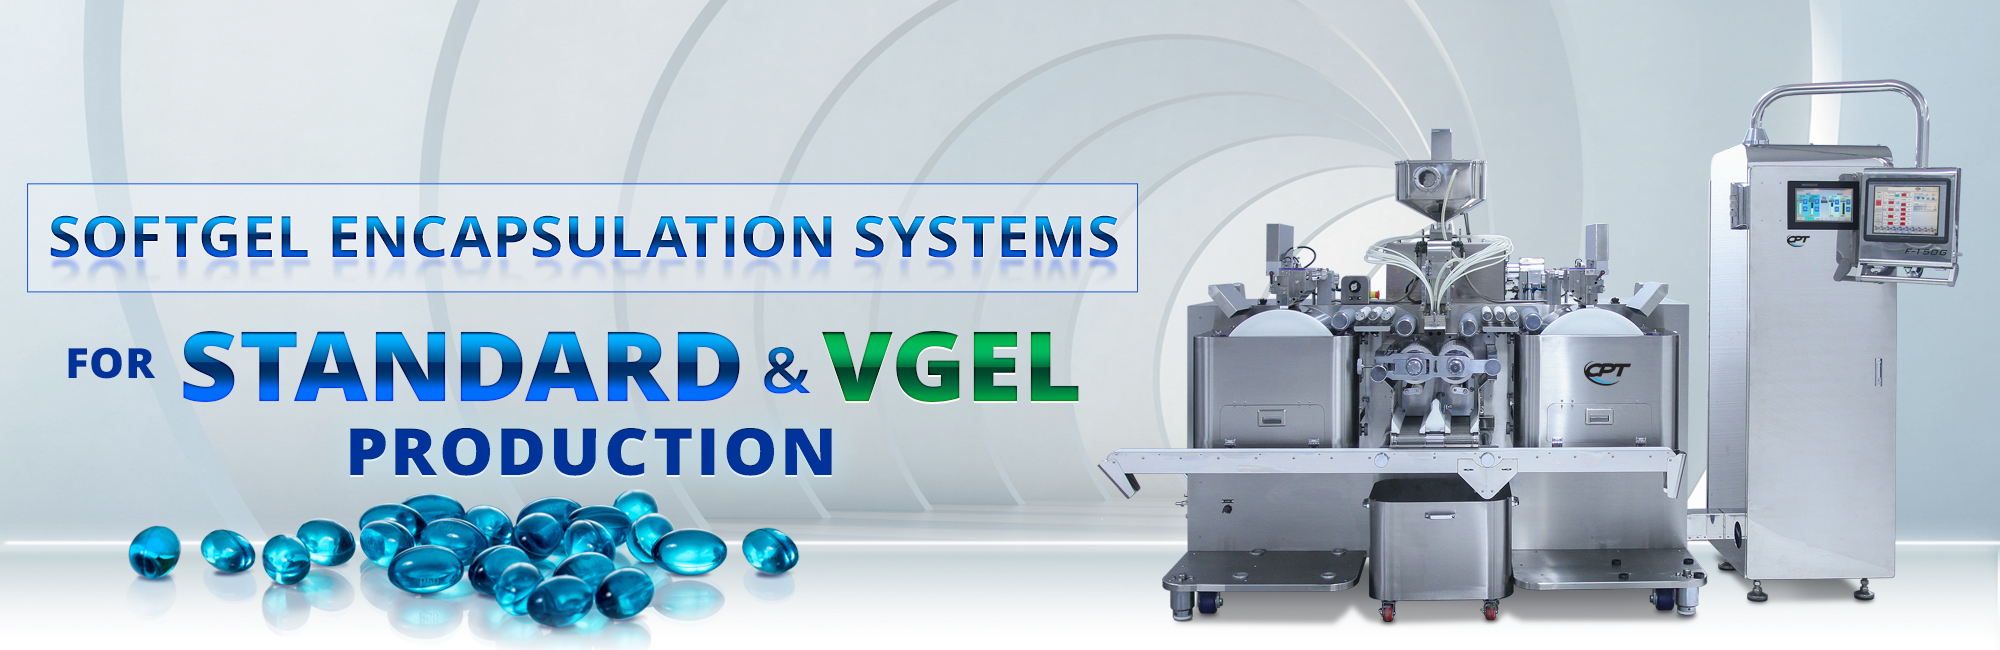 Softgel Encapsulation Systems